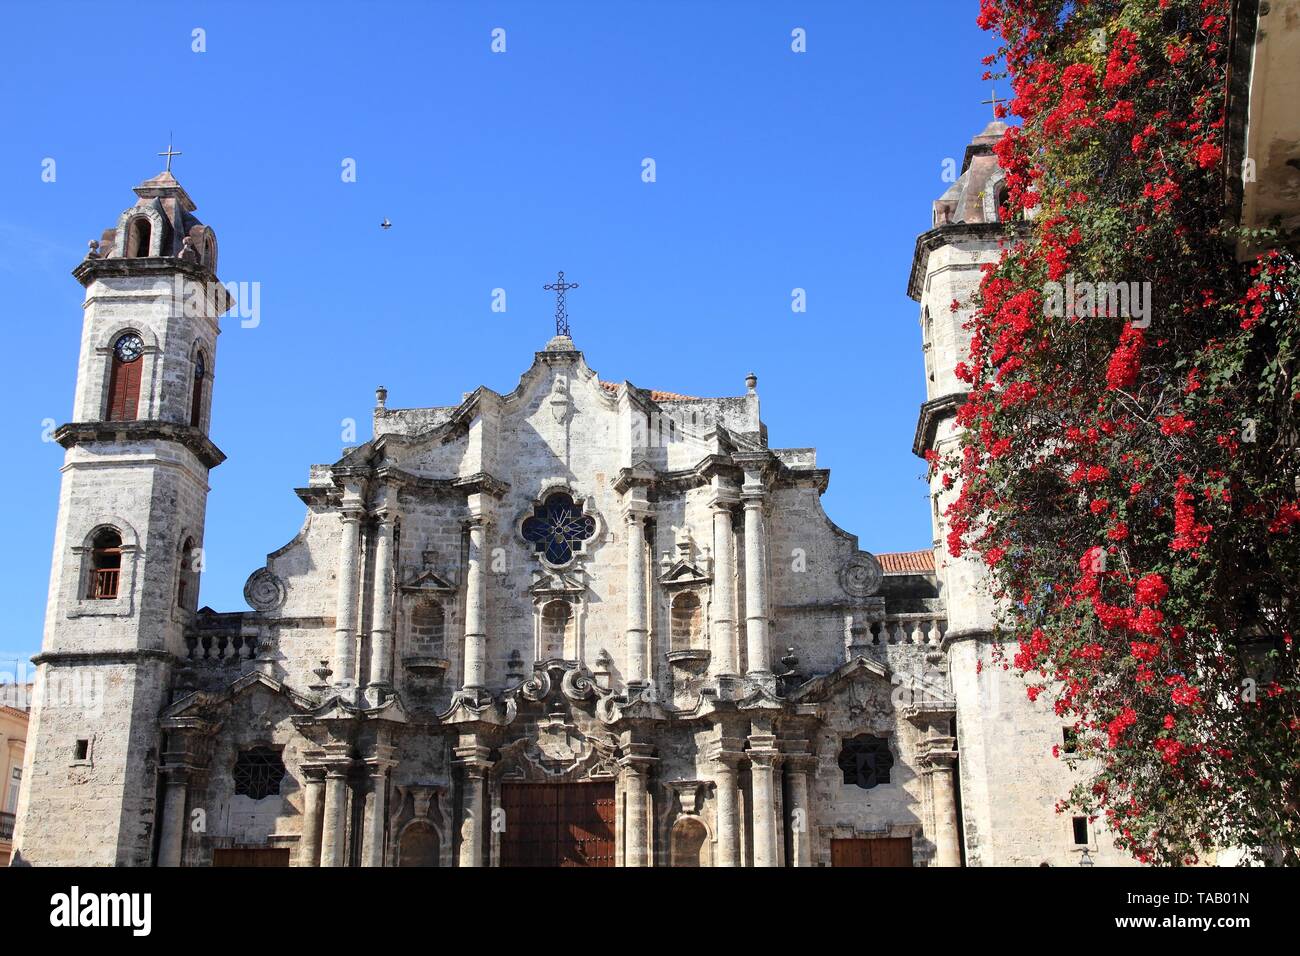 L'Avana, Cuba - architettura della città. Famosa Cattedrale barocca, con le sue torri asimmetriche. Foto Stock